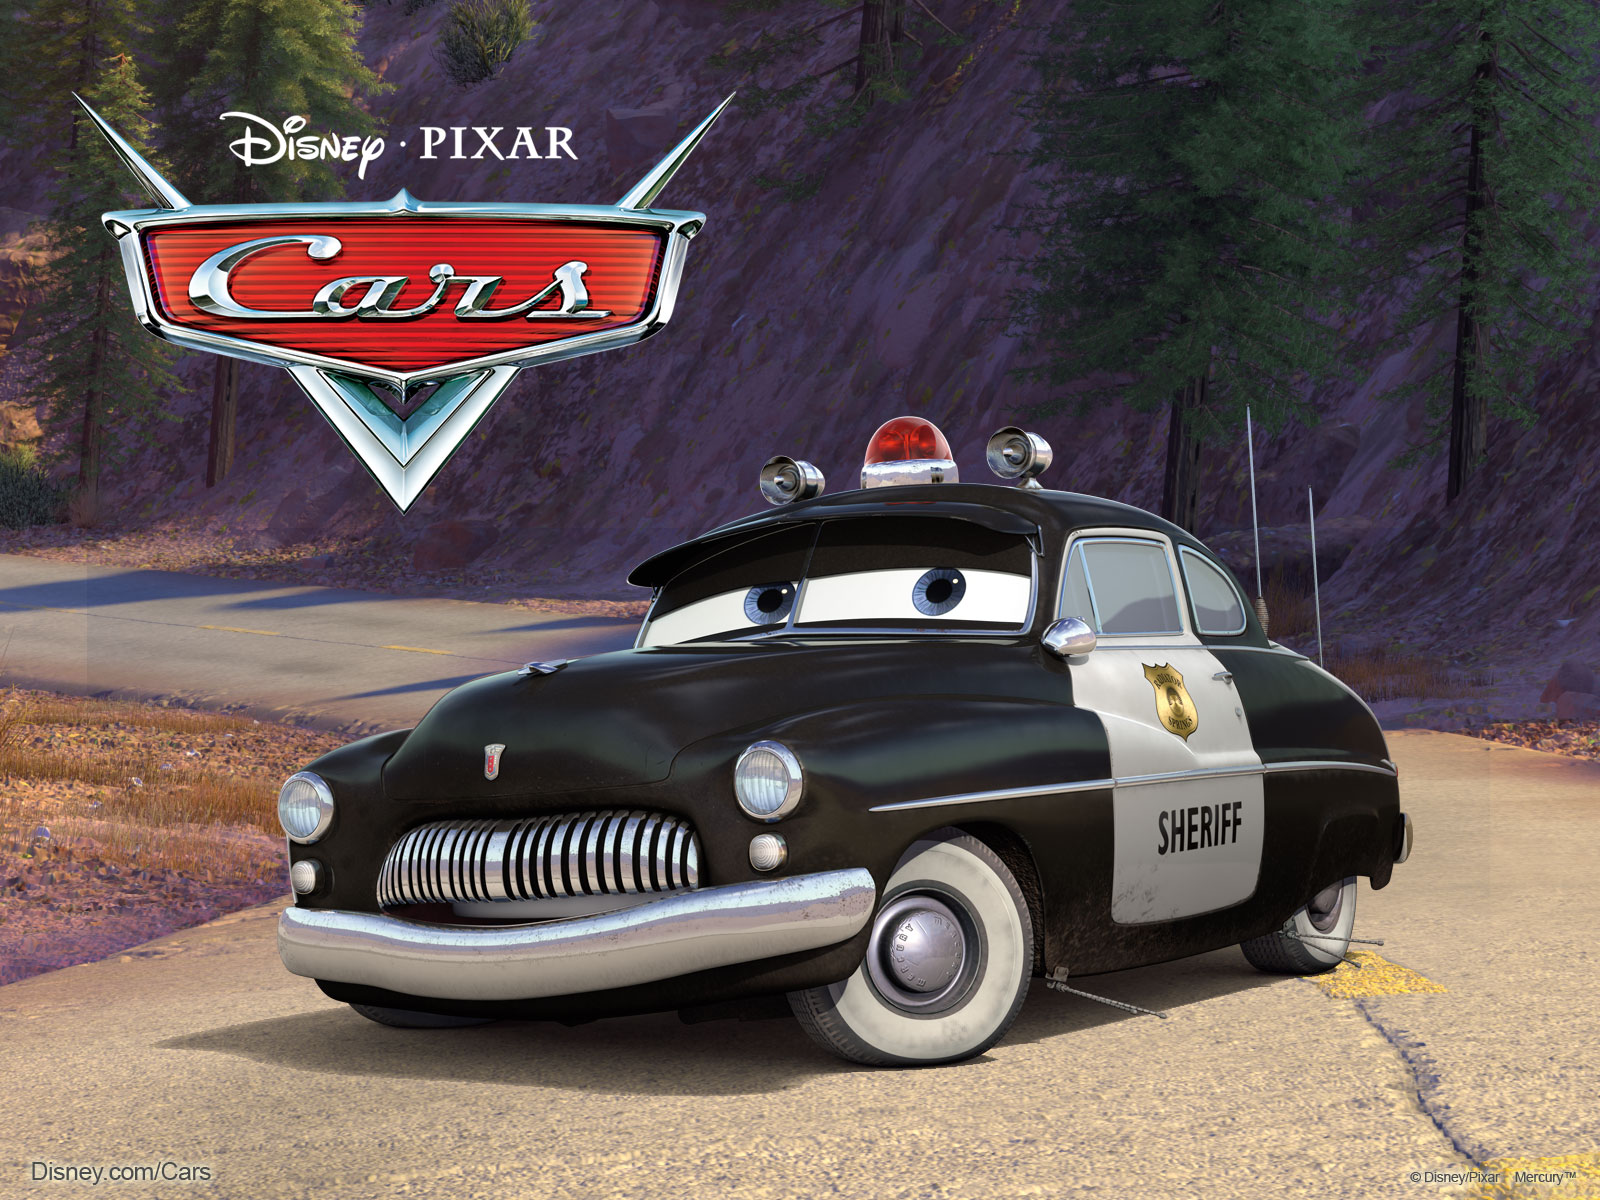 The Sheriff Police Car from Pixar's Cars Movie Desktop Wallpaper